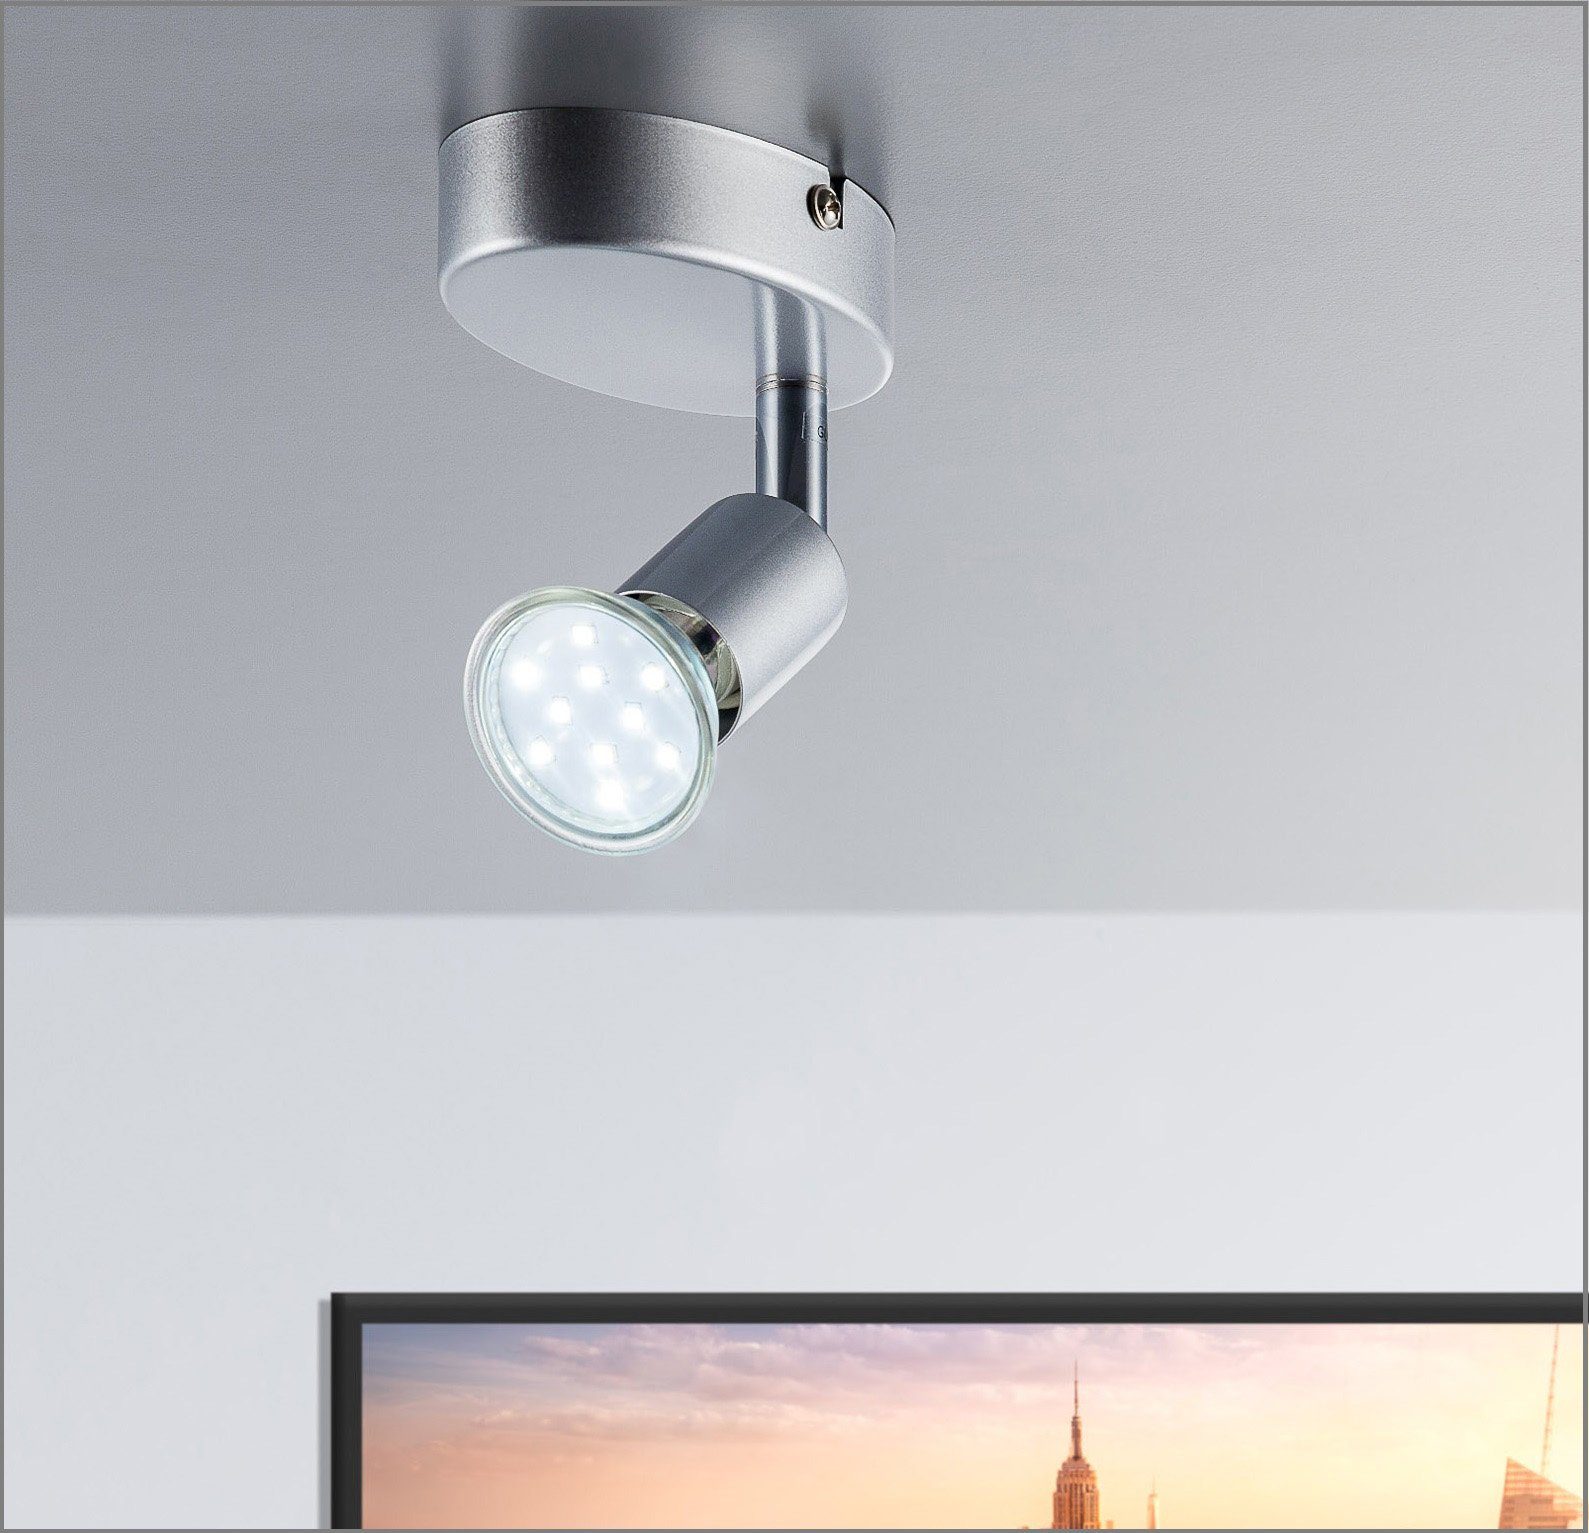 LED LED Wohnzimmer wechselbar, Metall GU10 Warmweiß, Leuchte LED B.K.Licht Deckenleuchte, Decken-Spot Deckenlampe schwenkbar